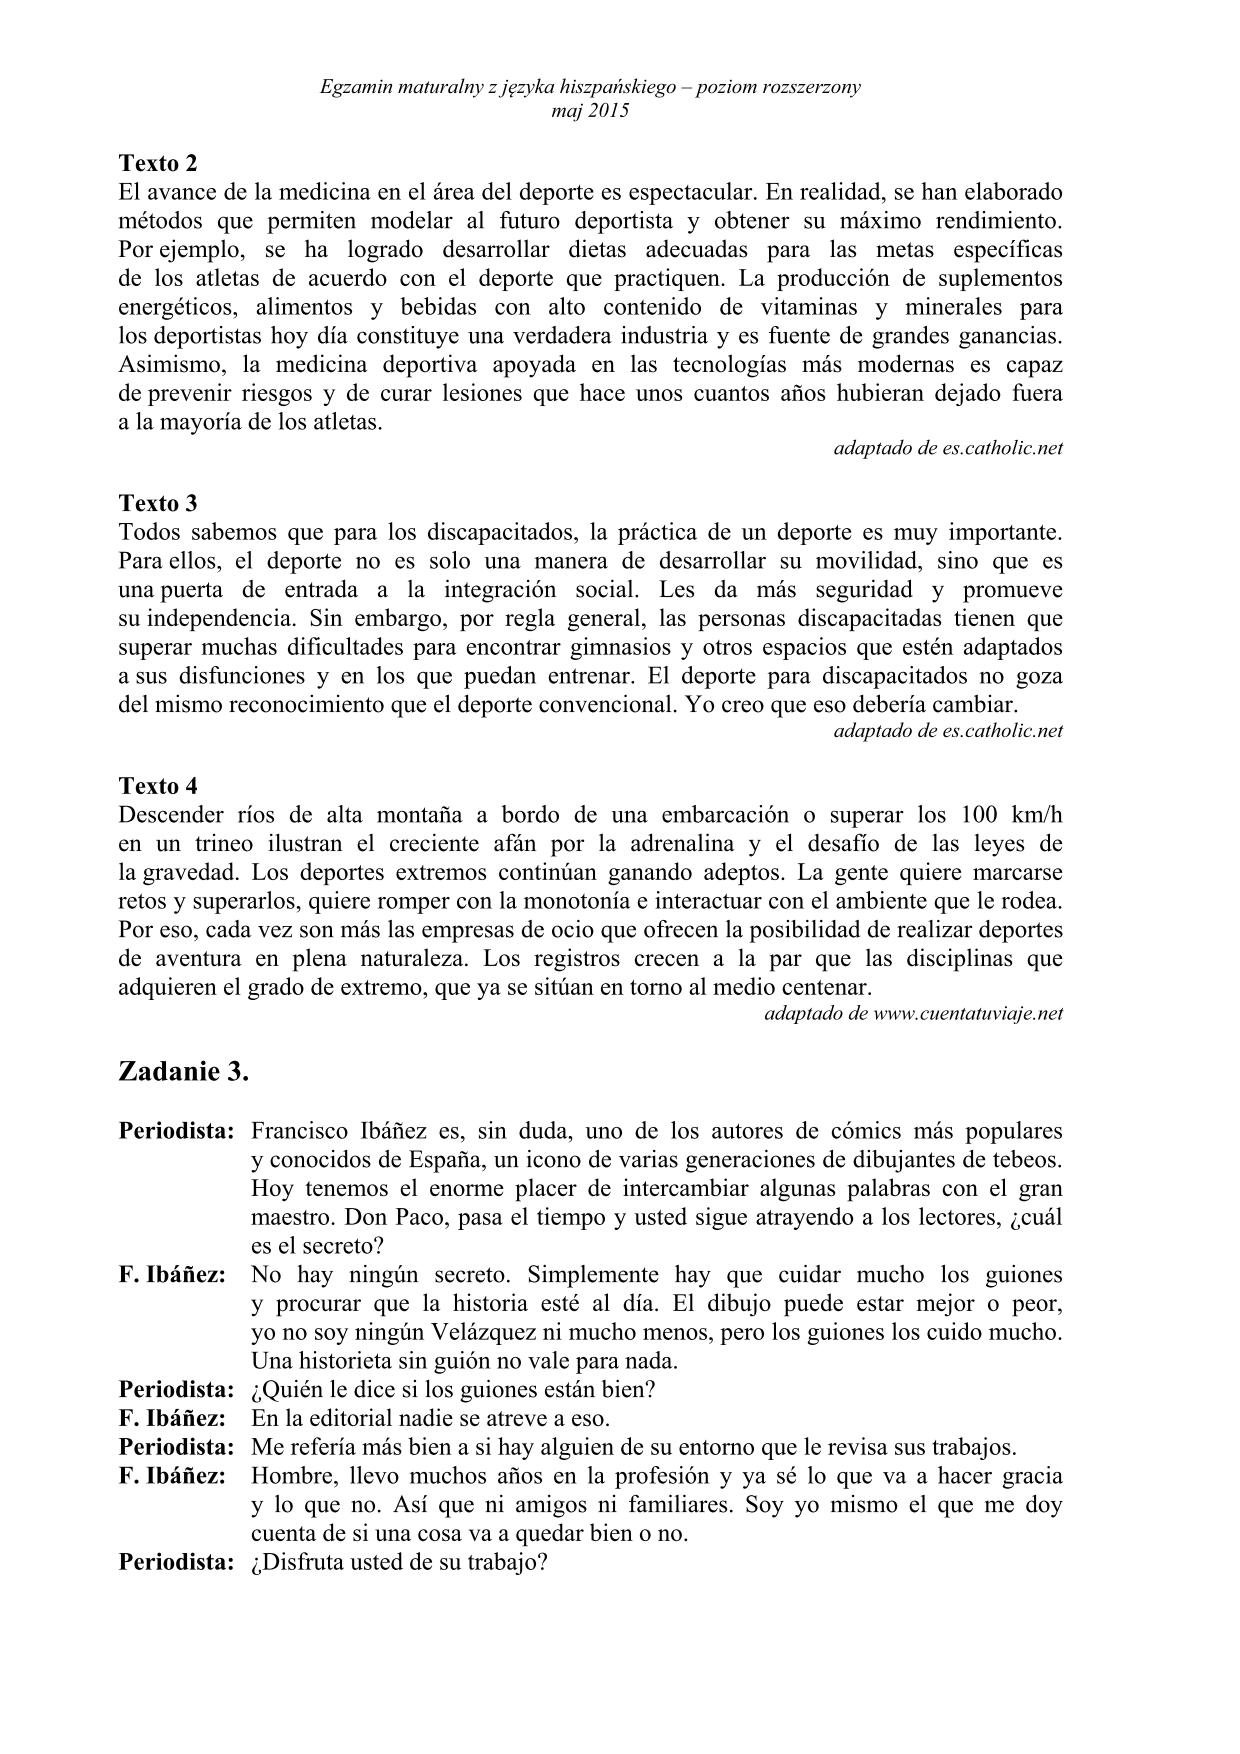 transkrypcja-hiszpanski-poziom-rozszerzony-matura-2015-2